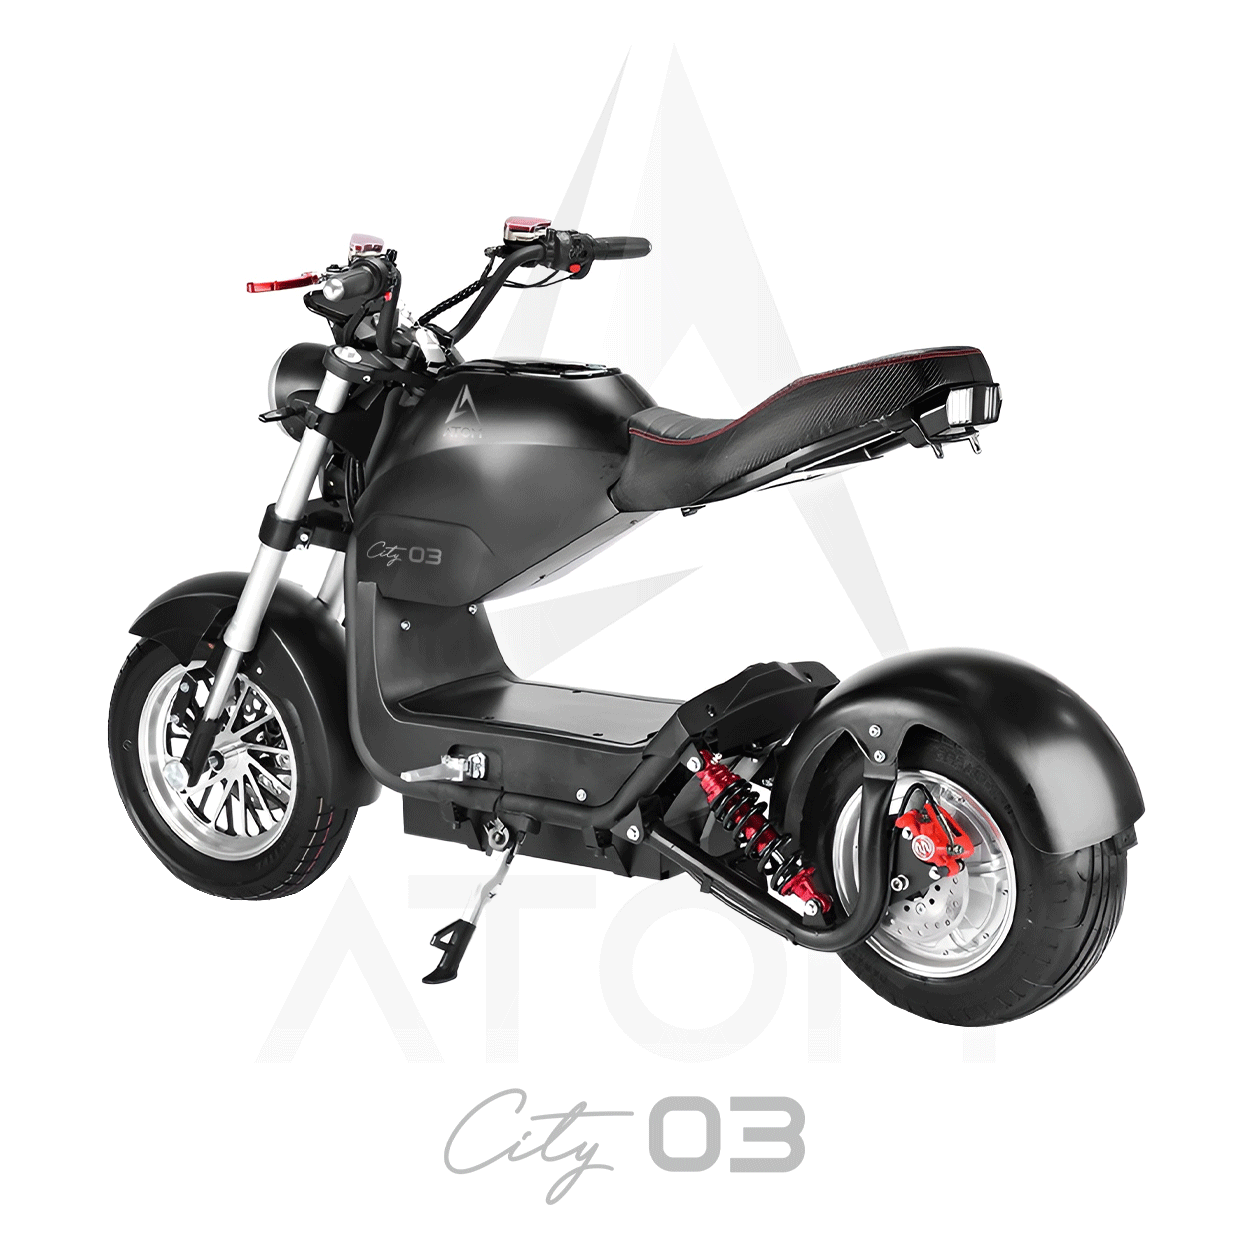 Scooter électrique, Atom City 03 | 1500 W | 50 cm³ - Atom Motors